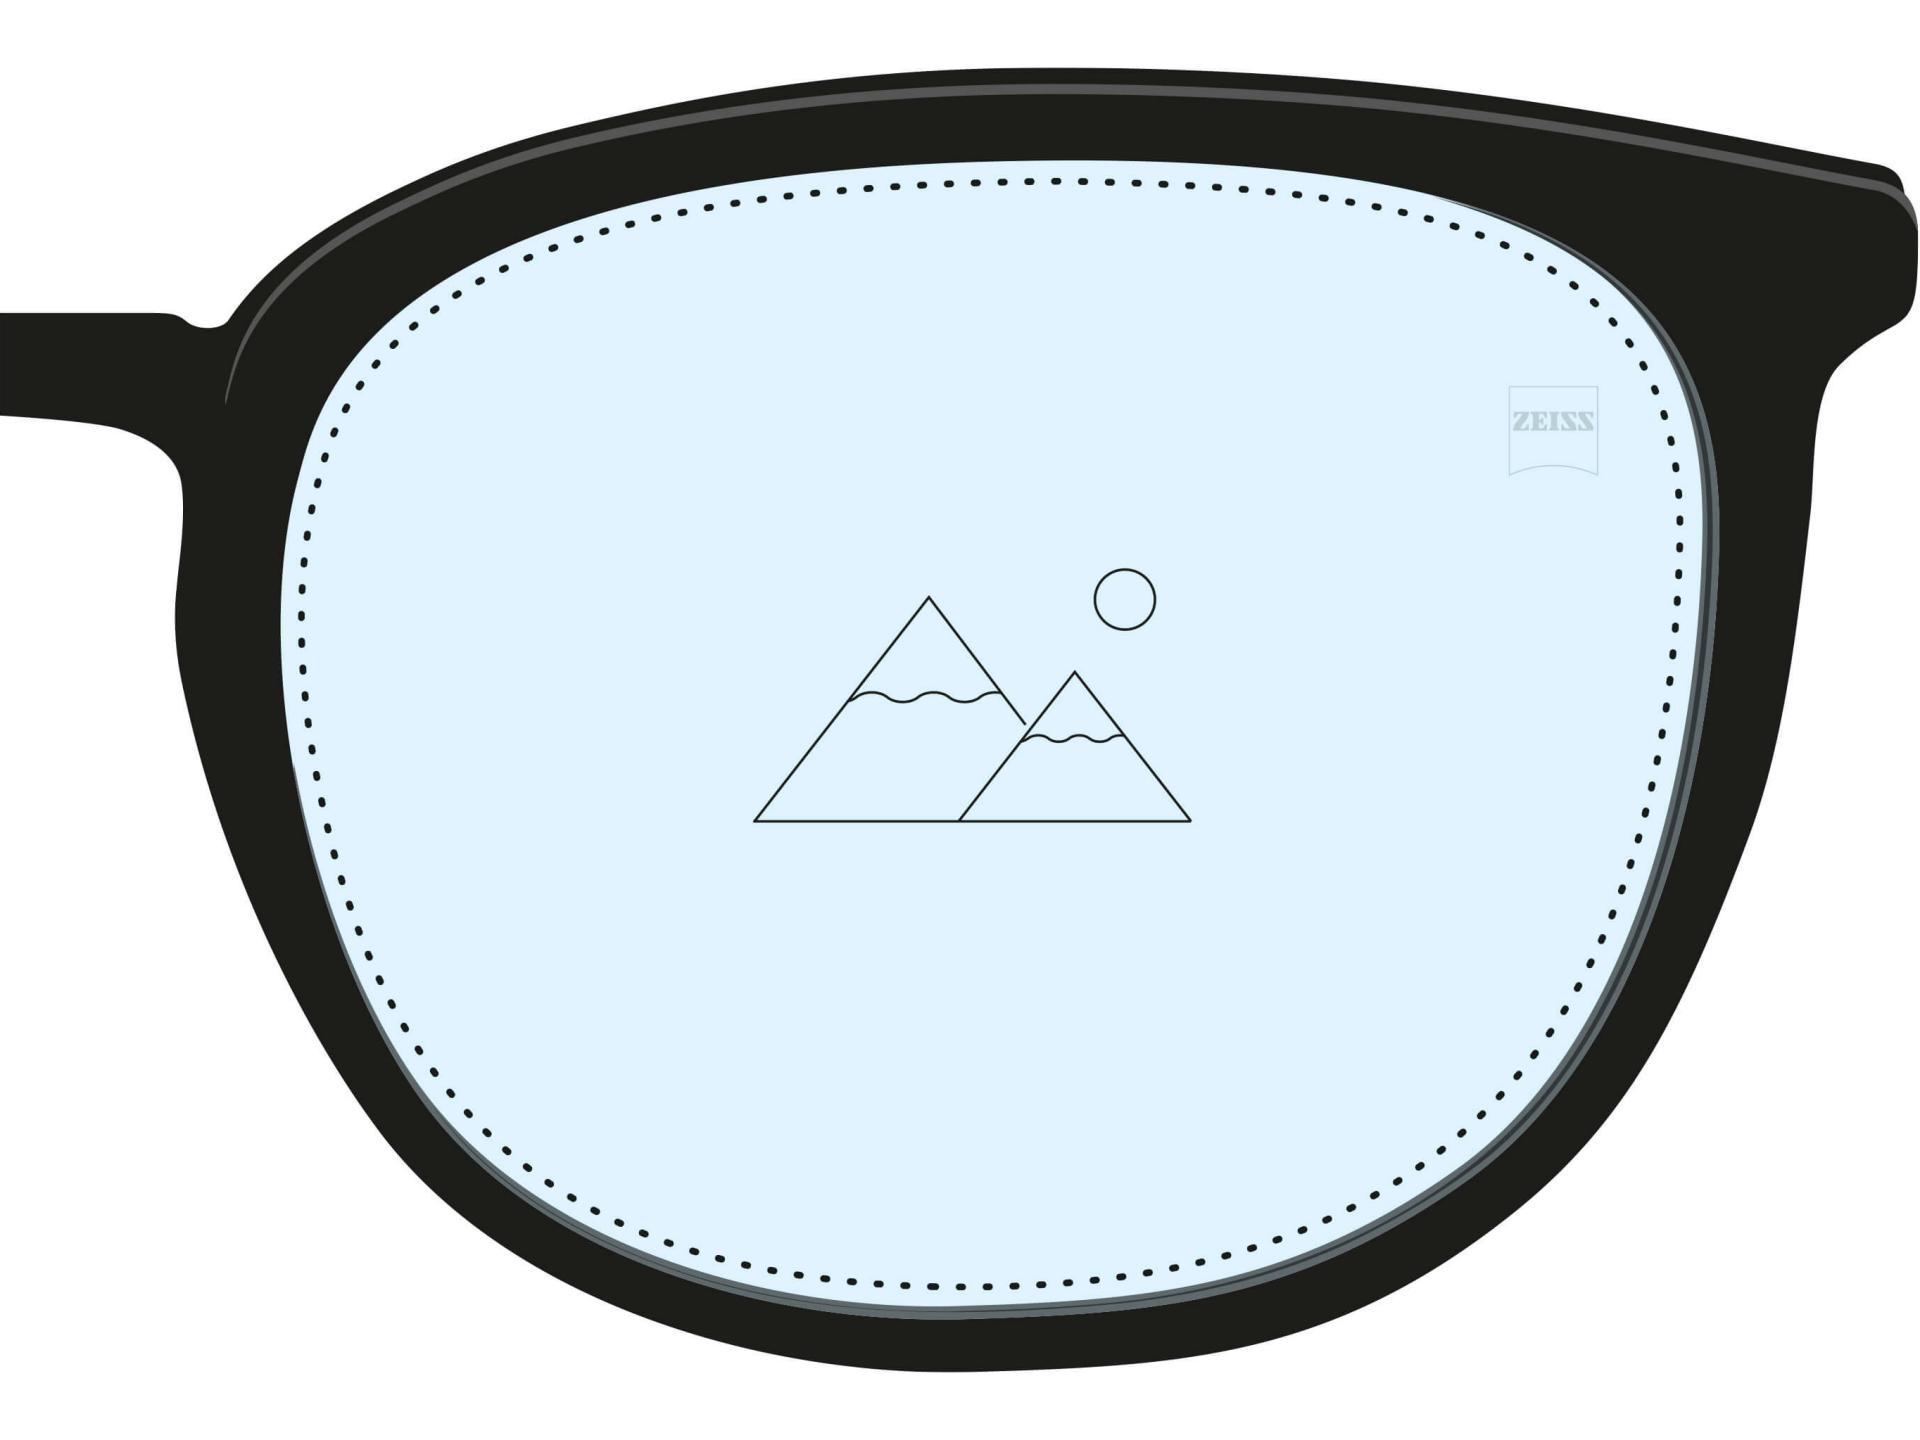 Een illustratie van een enkelvoudig brillenglas. Het is helemaal gevuld met een lichtblauwe kleur en een enkel pictogram geeft aan dat het slechts één voorschrift voor één afstand heeft.